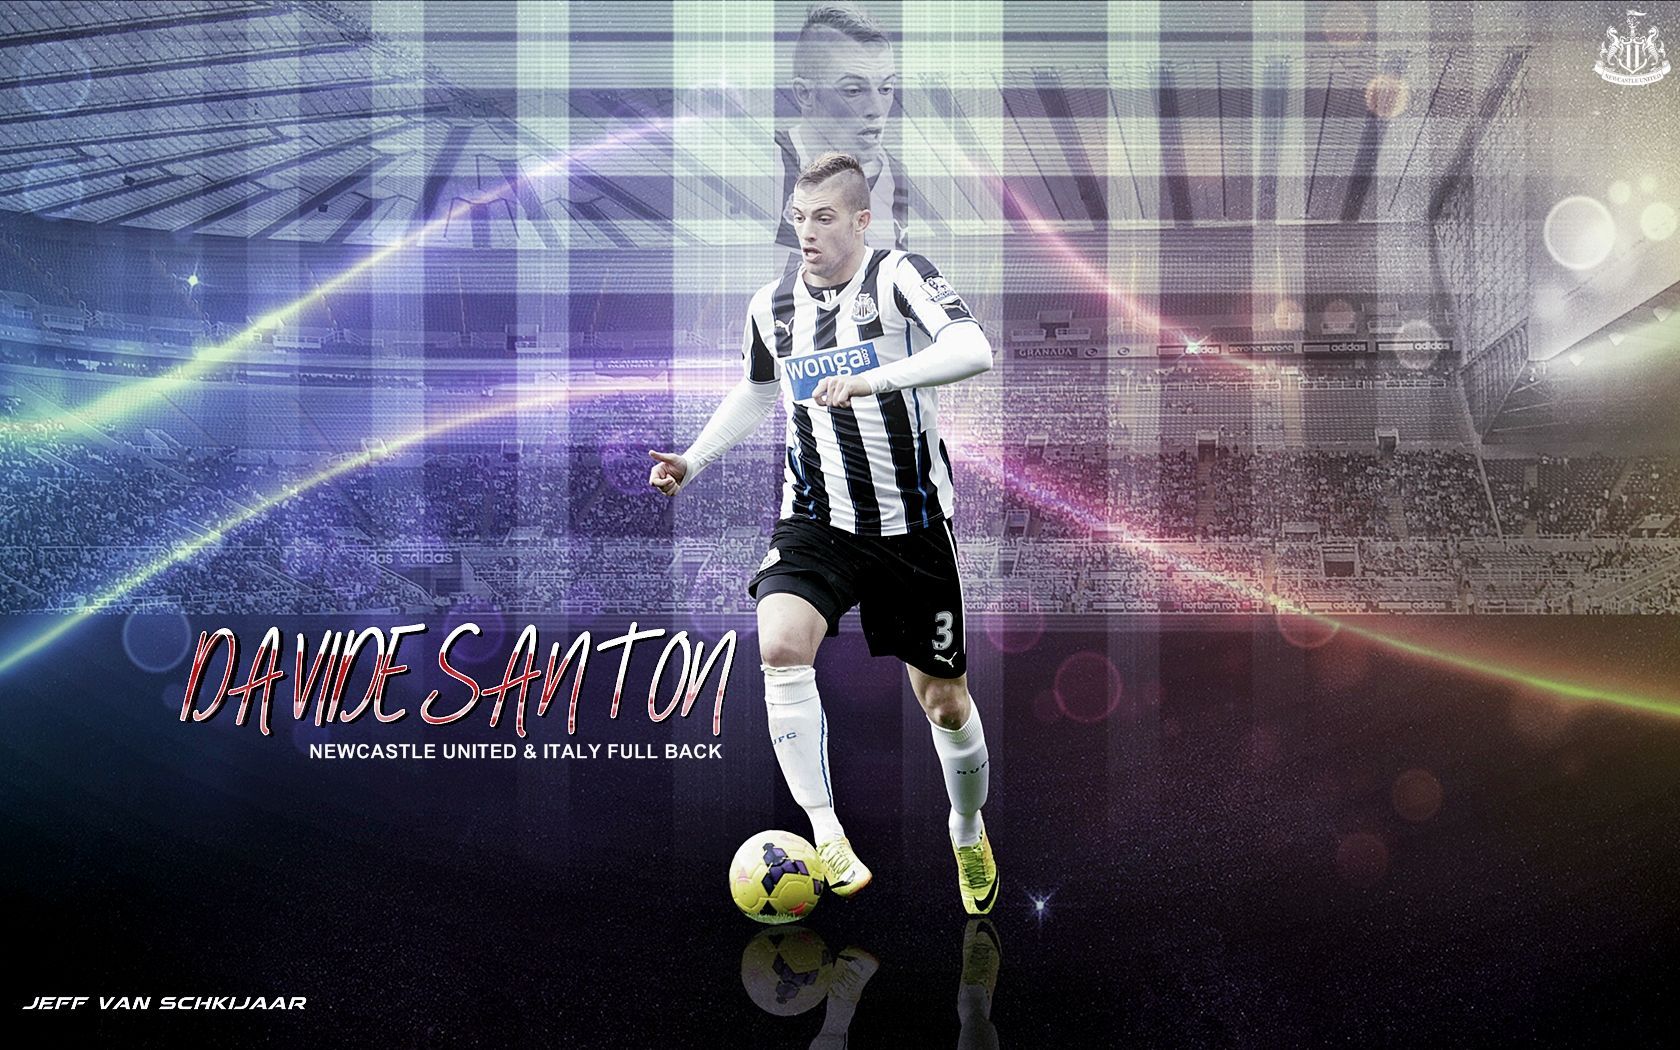 Davide Santon Newcastle United 2014 Wallpaper by jeffery10 on ...